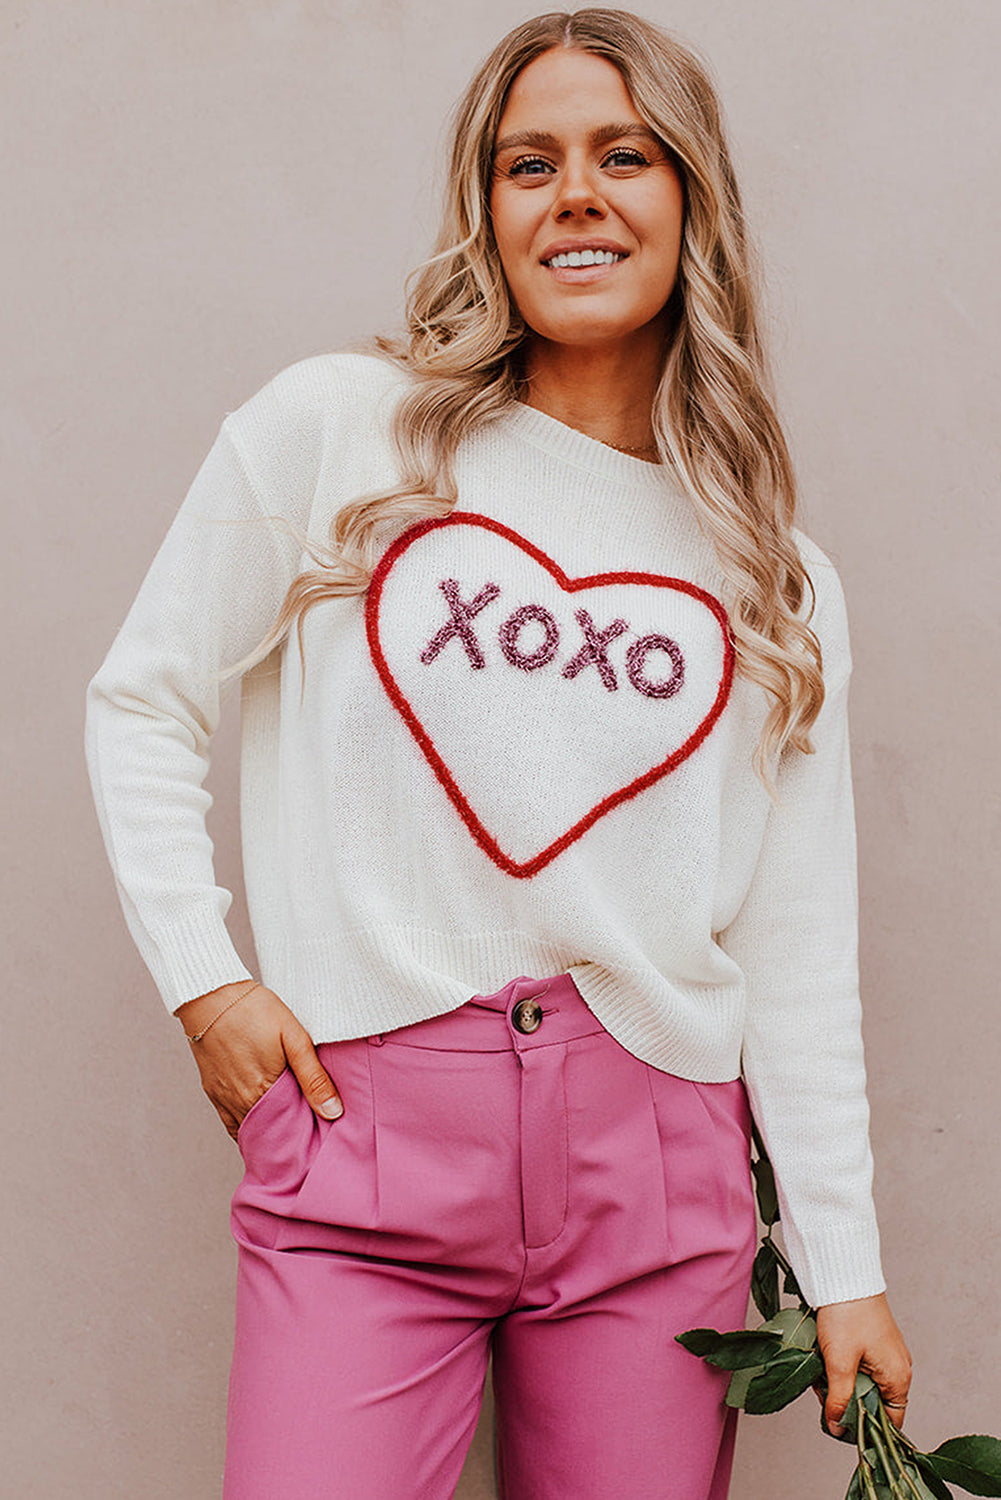 Pleten pulover z belim srčkom in XOXO vzorcem na ramenih